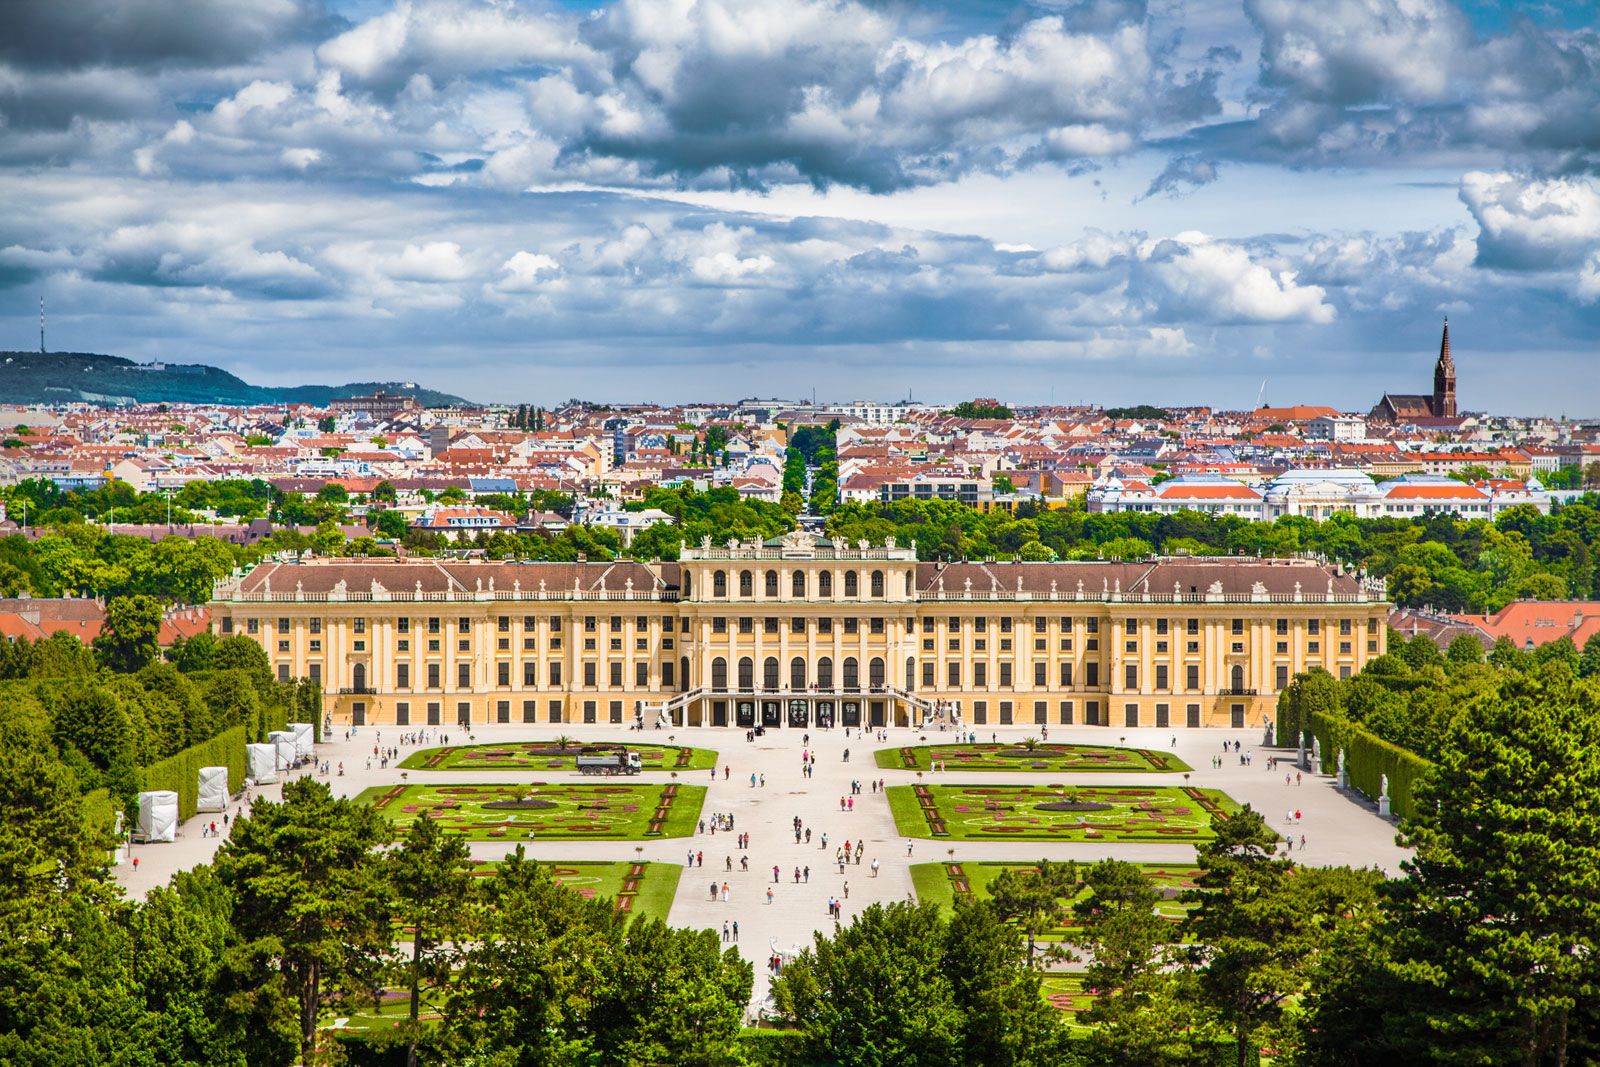 Schönbrunn Palace, Vienna - Best Places to Visit in Austria